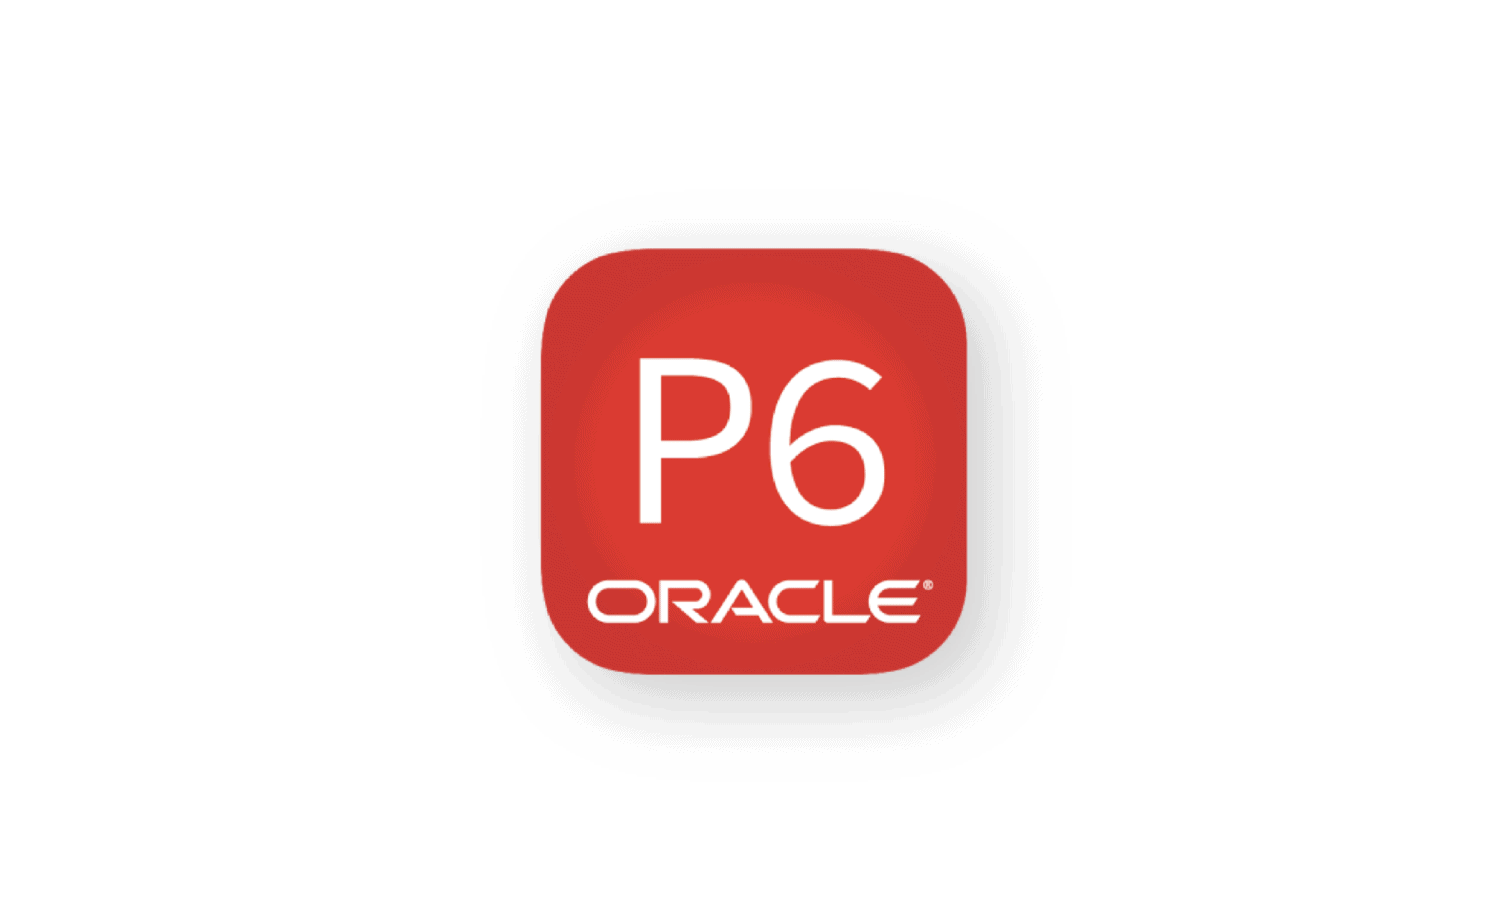 Logotipo de Oracle P6